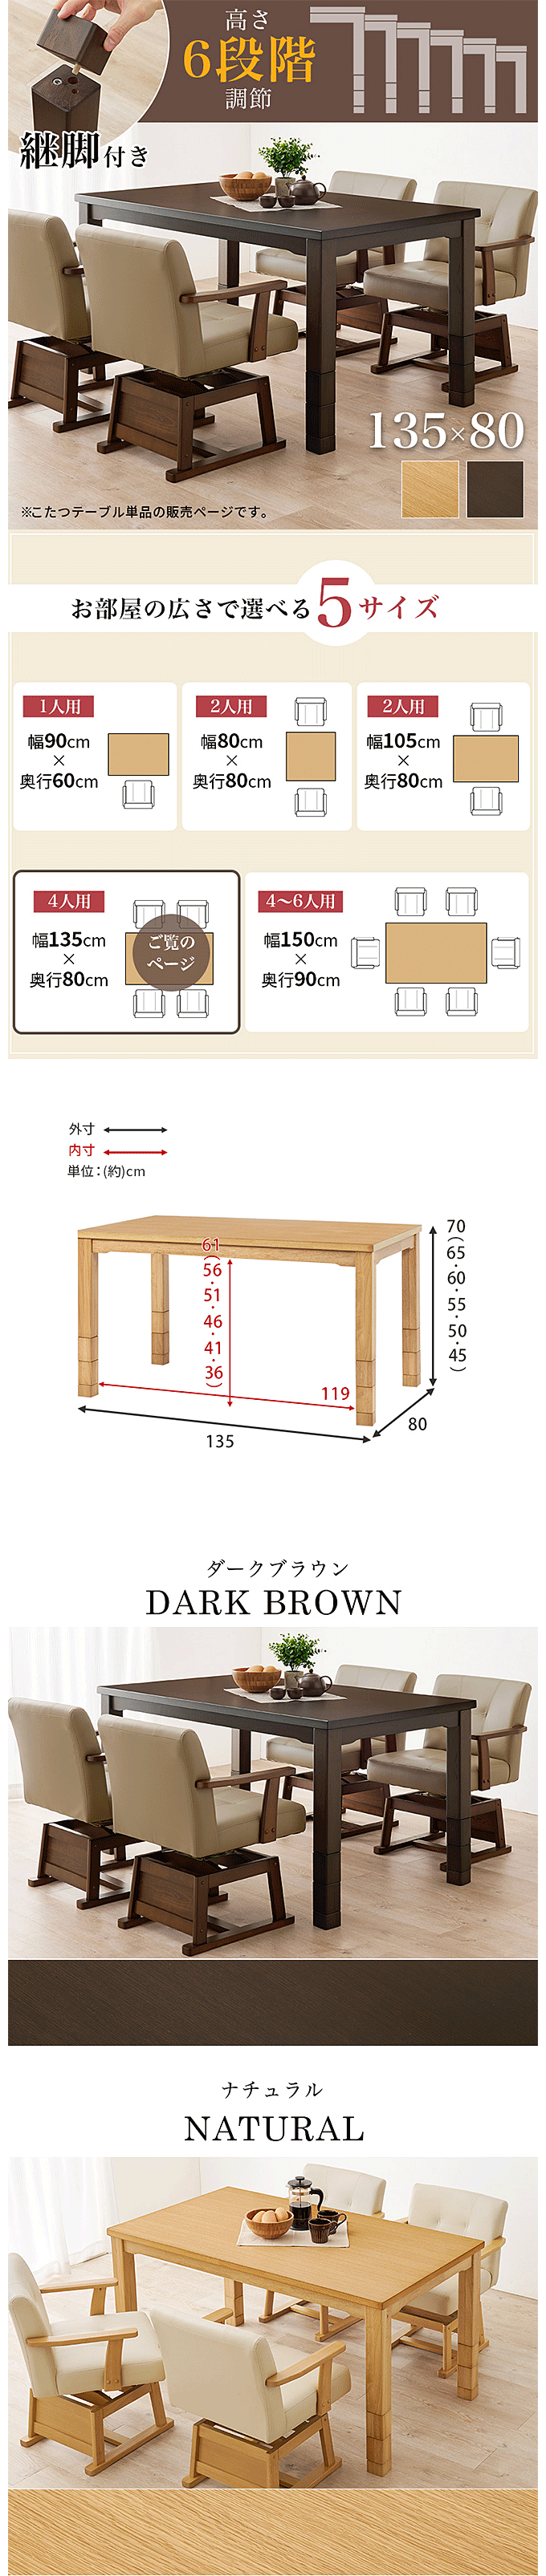 3段階継脚ダイニングコタツ 135×80 ブラウン - 机/テーブル